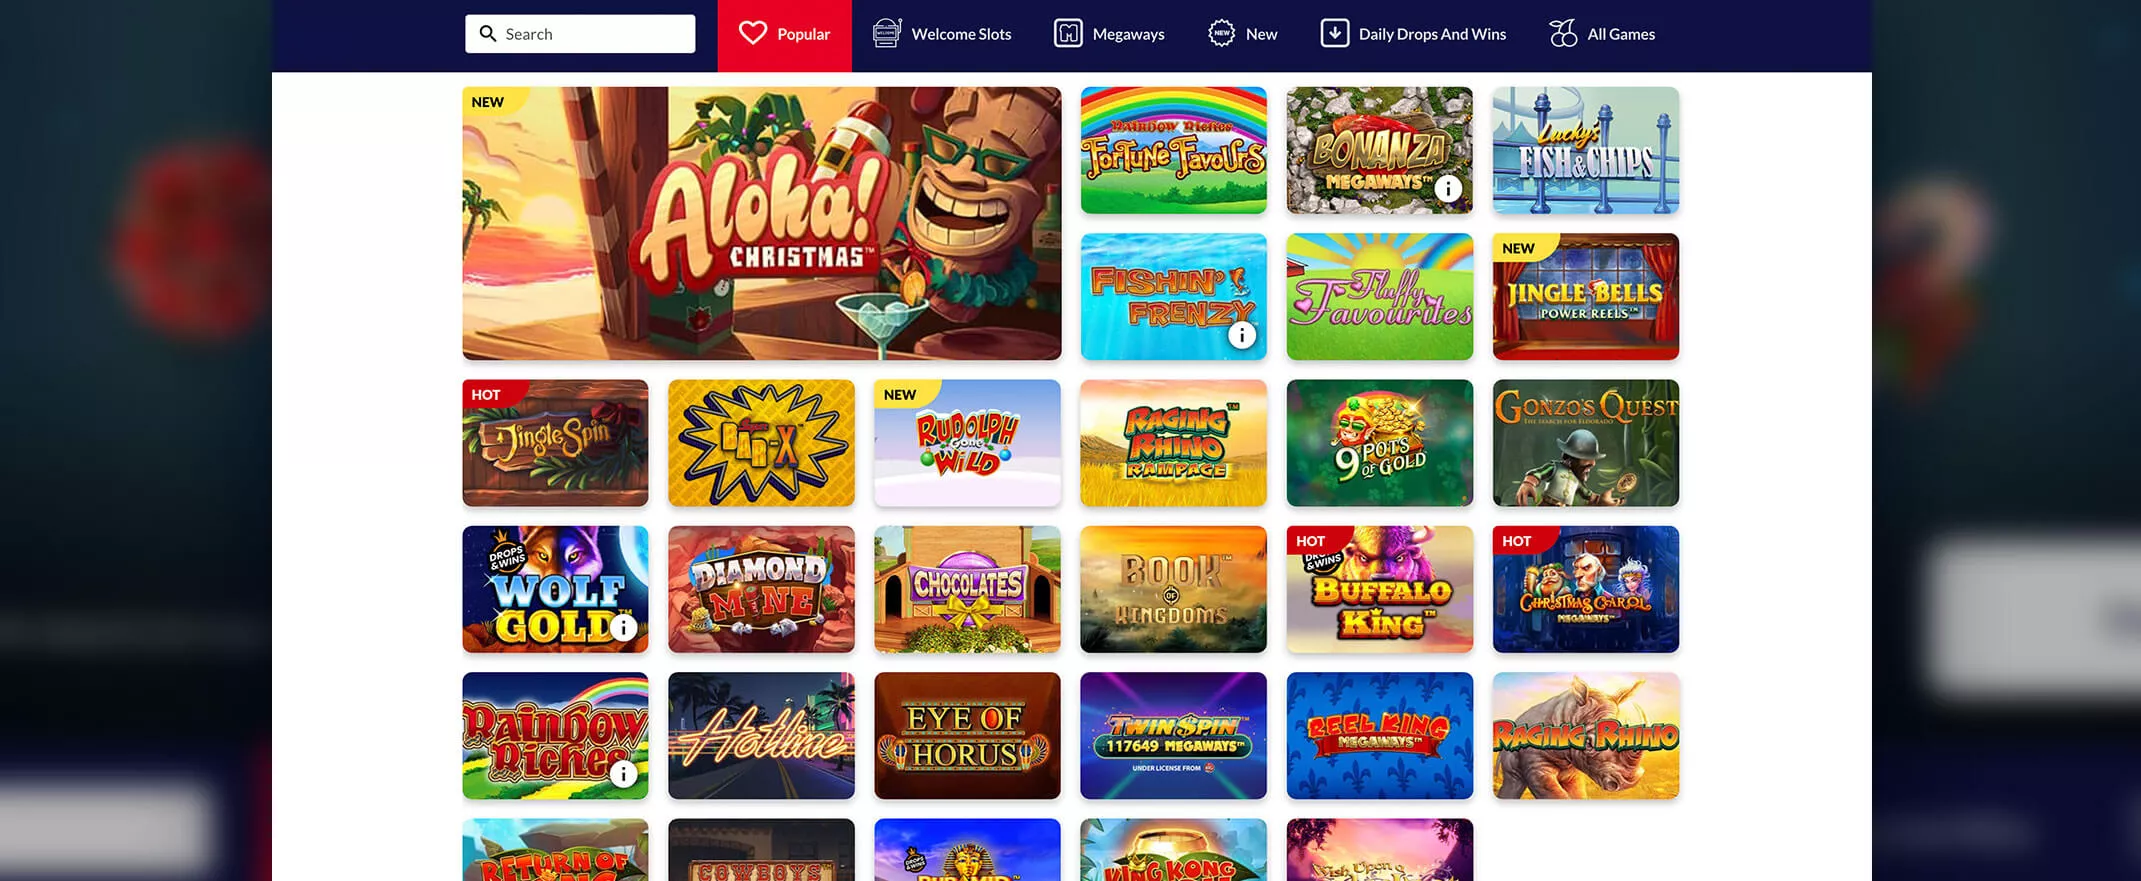 Kerching Casino games screenshot